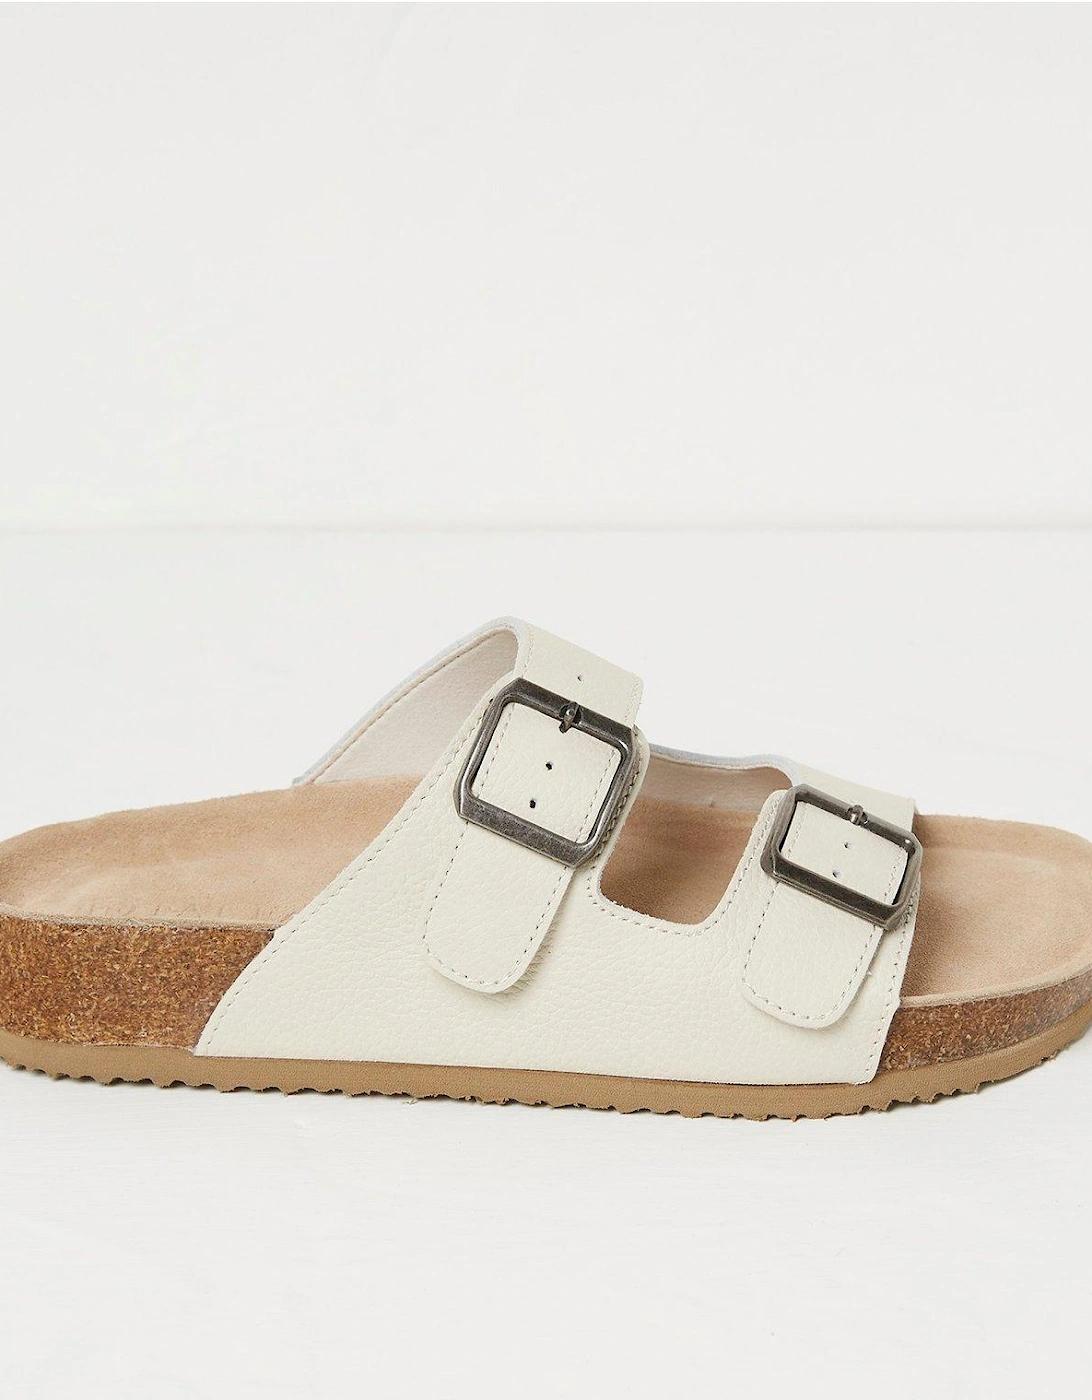 Meldon Footbed Sandal - White, 4 of 3